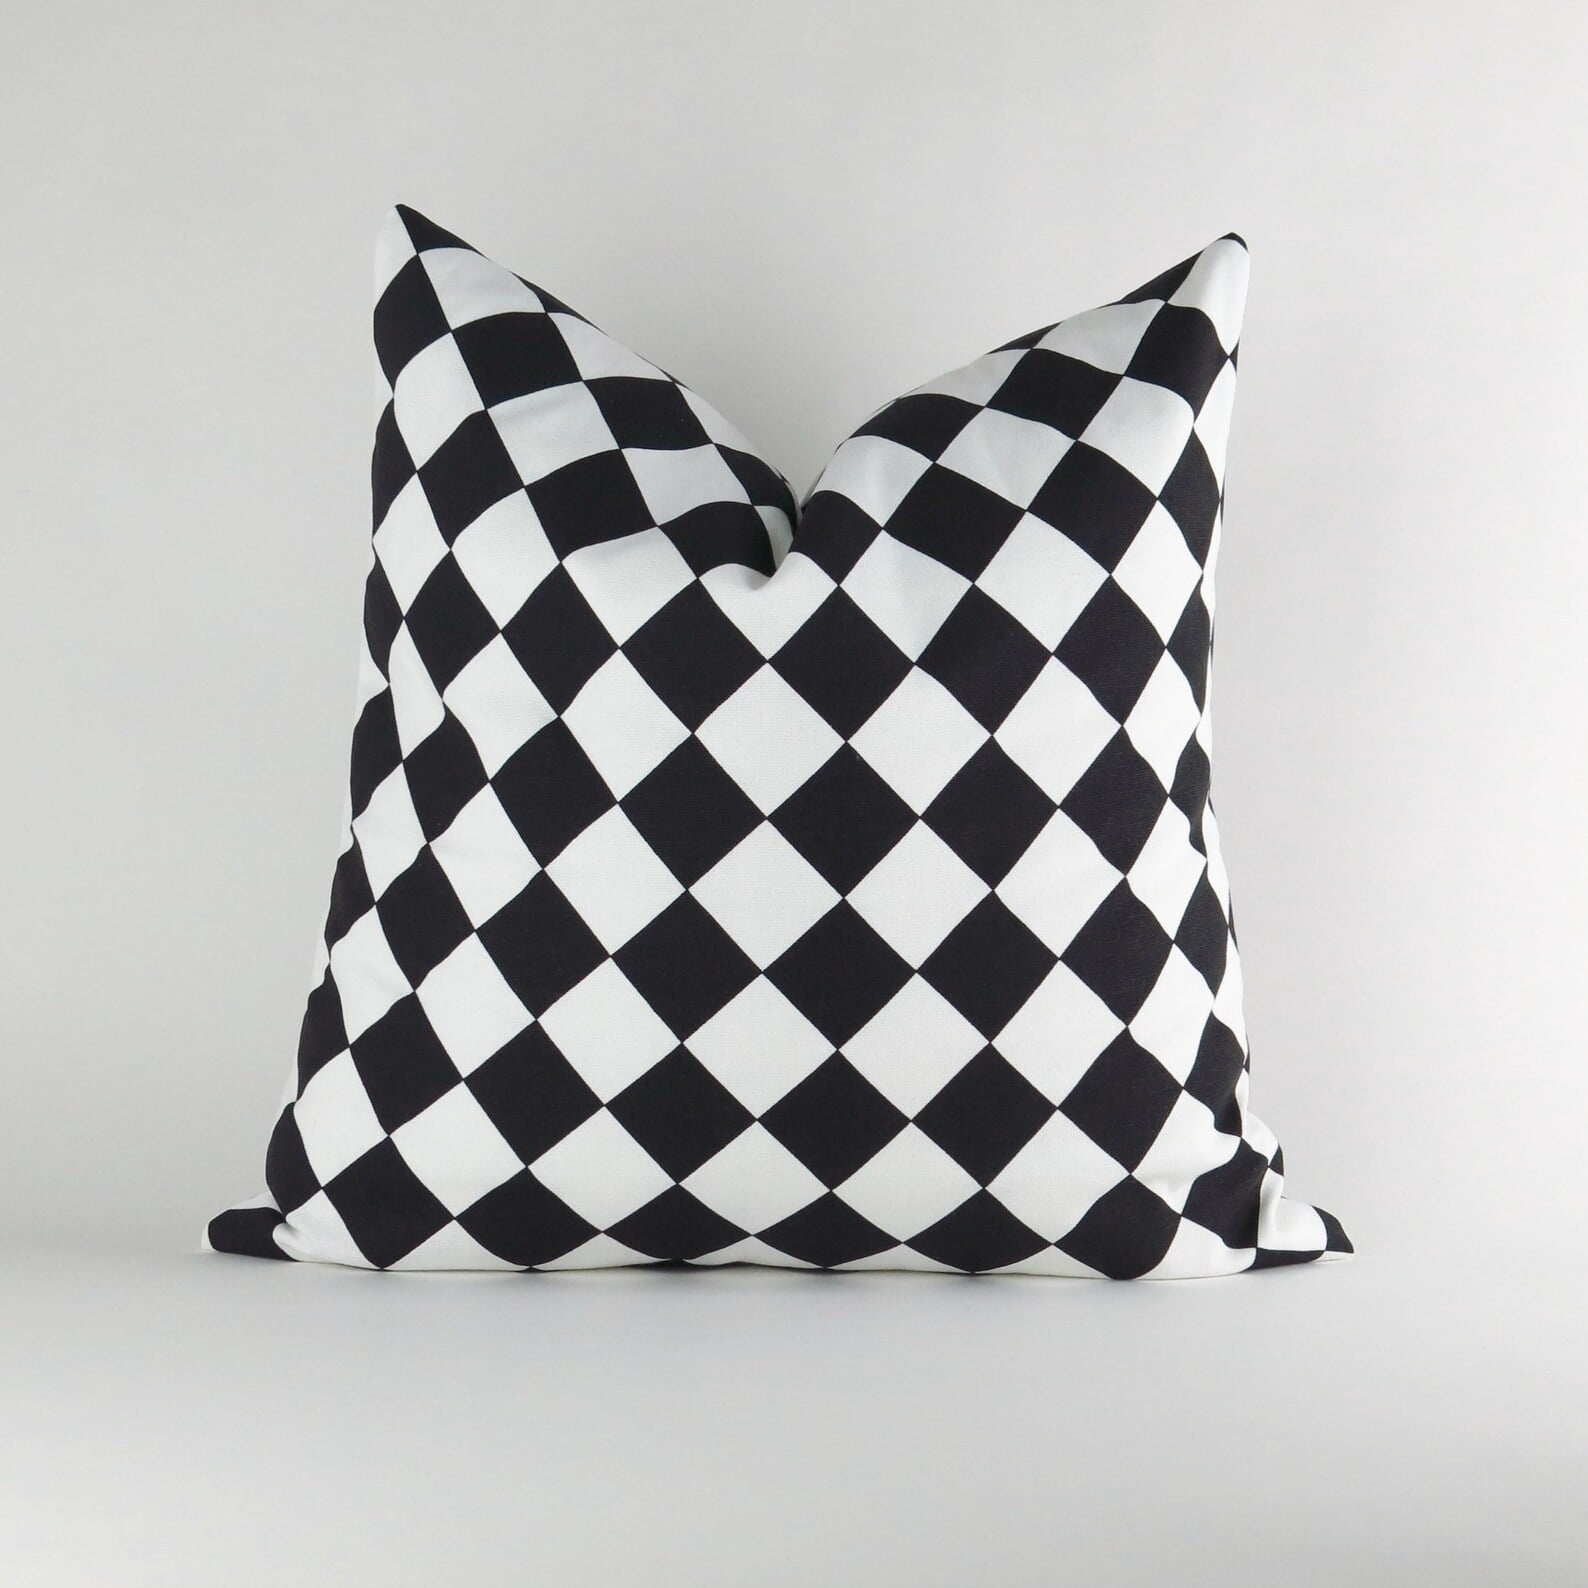 black and white buffalo plaid pillows - Checkered Pillow Cover -MANY SIZES- (Decorative Throw Pillow, Euro Sham) Diamond Black White by Premier Prints